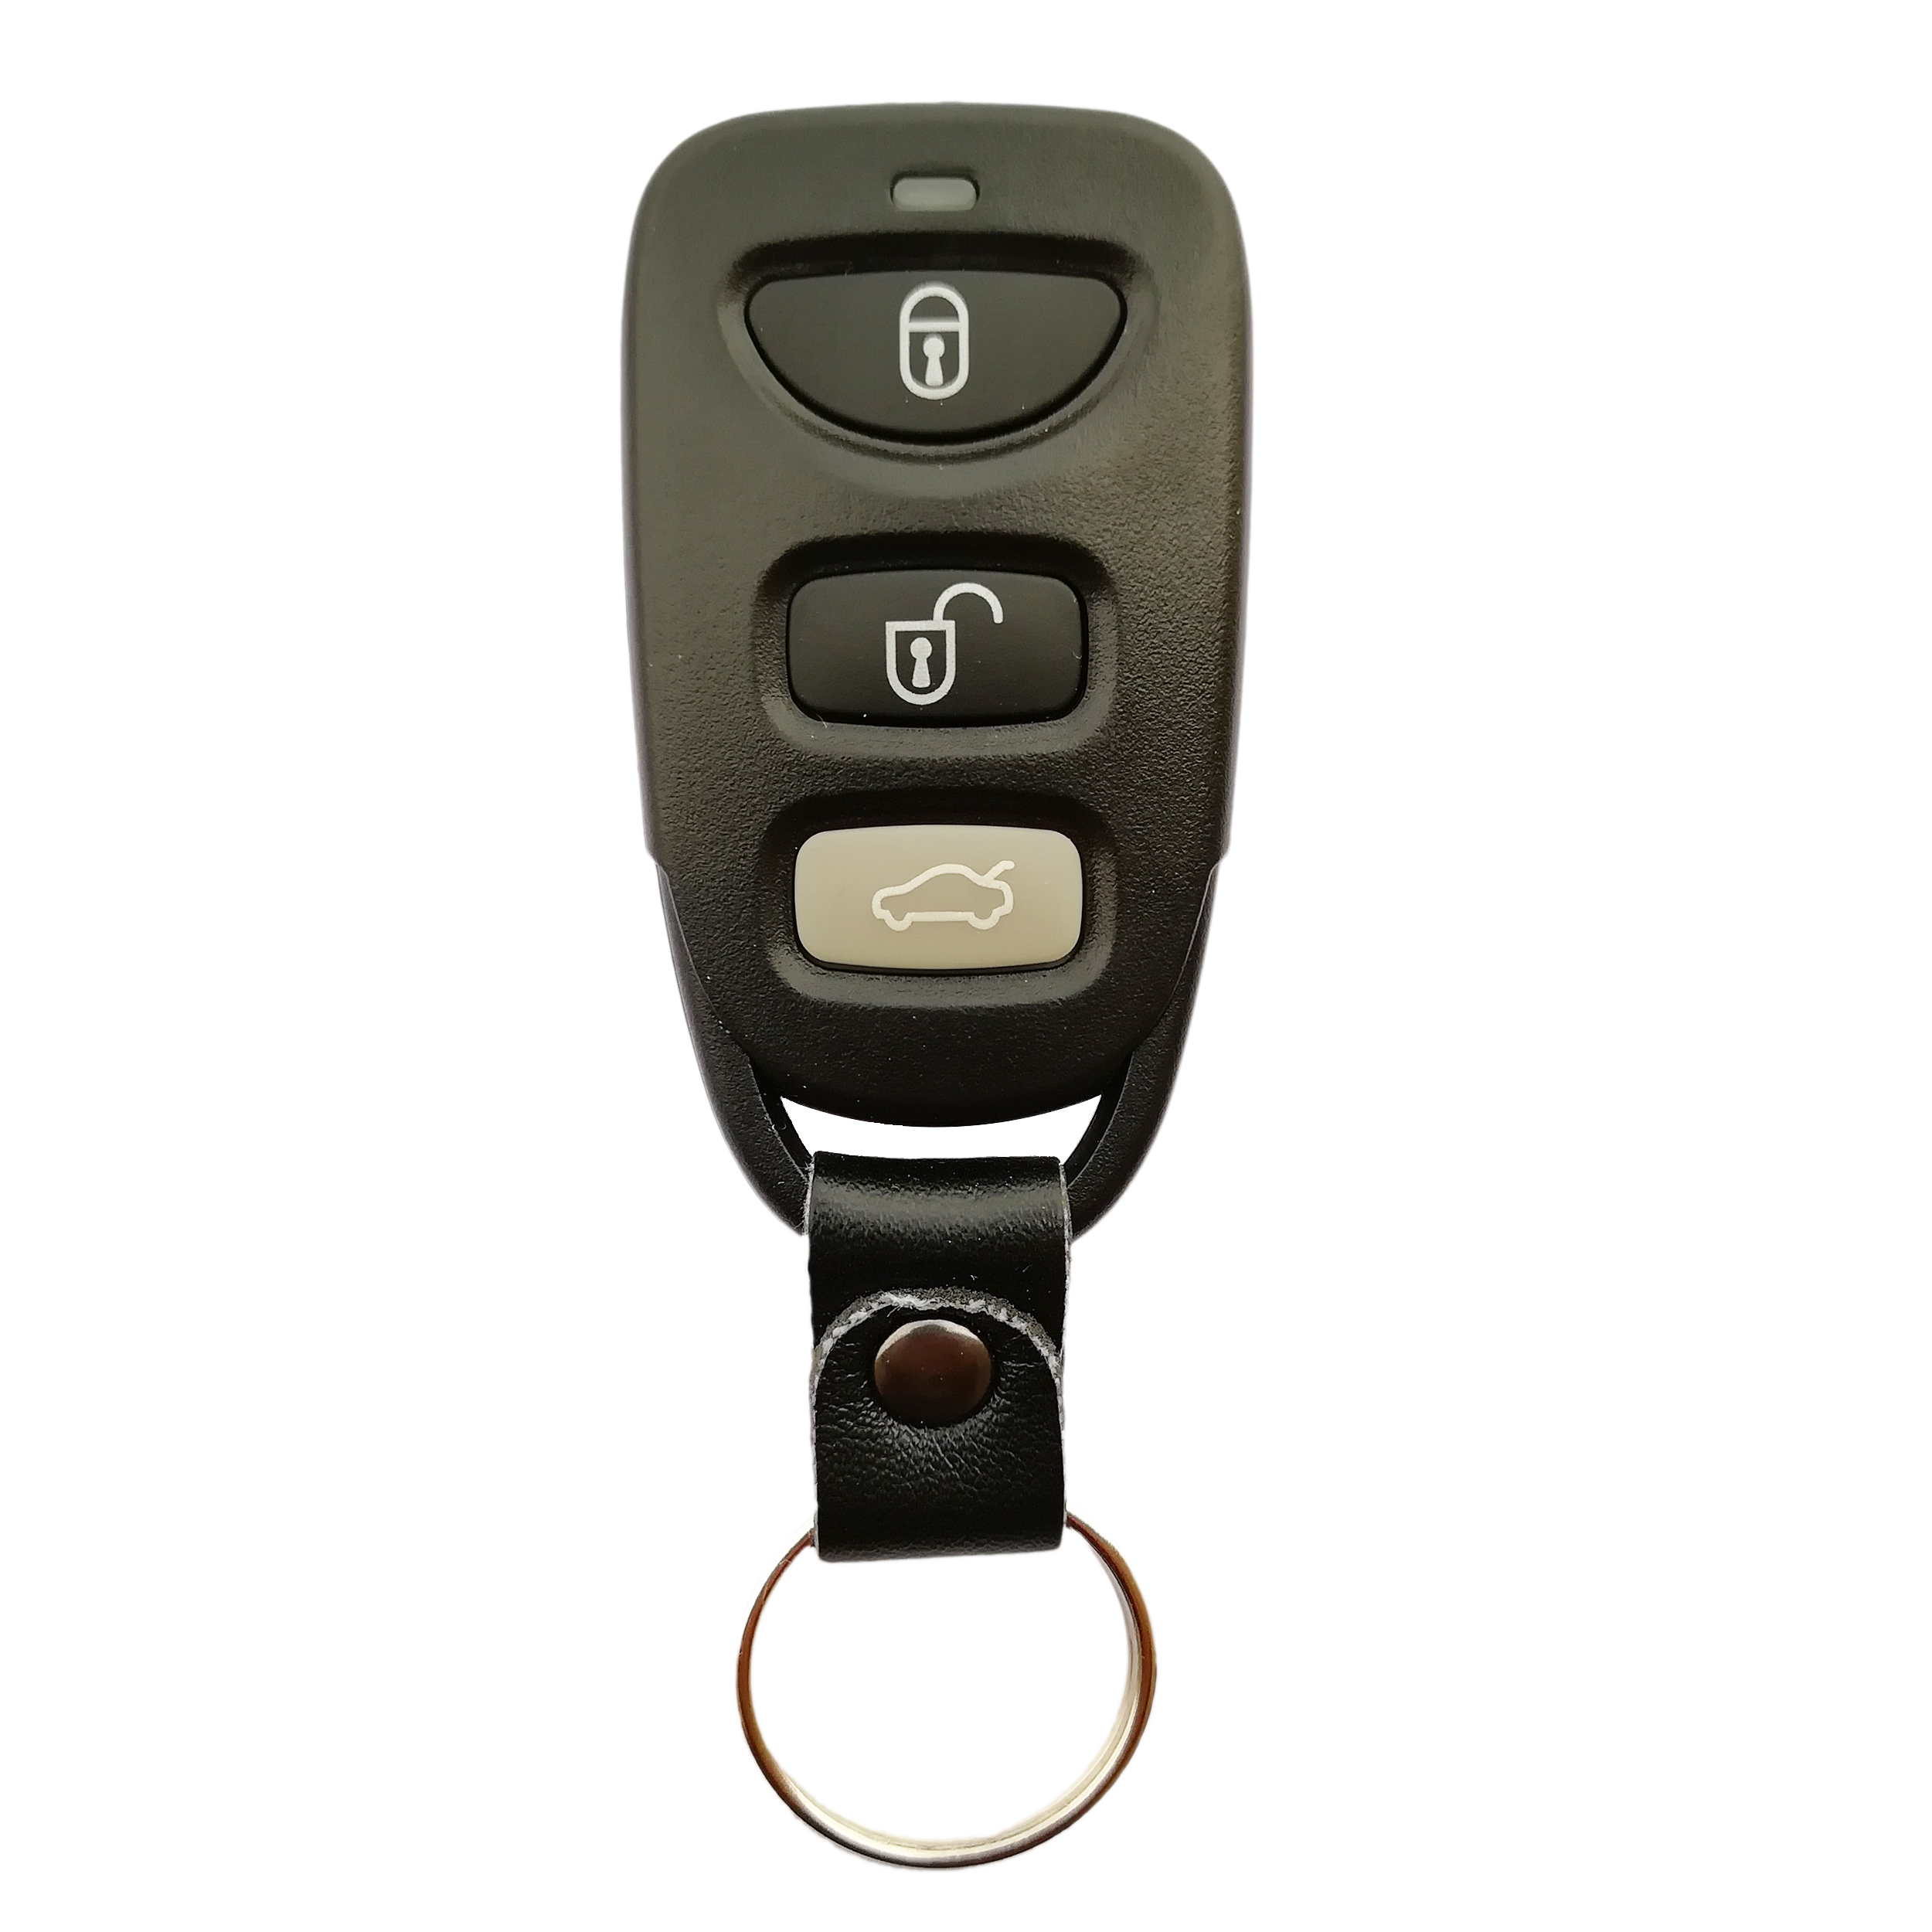 ریموت قفل مرکزی خودرو کد 07 مناسب برای برلیانس H220 و H230